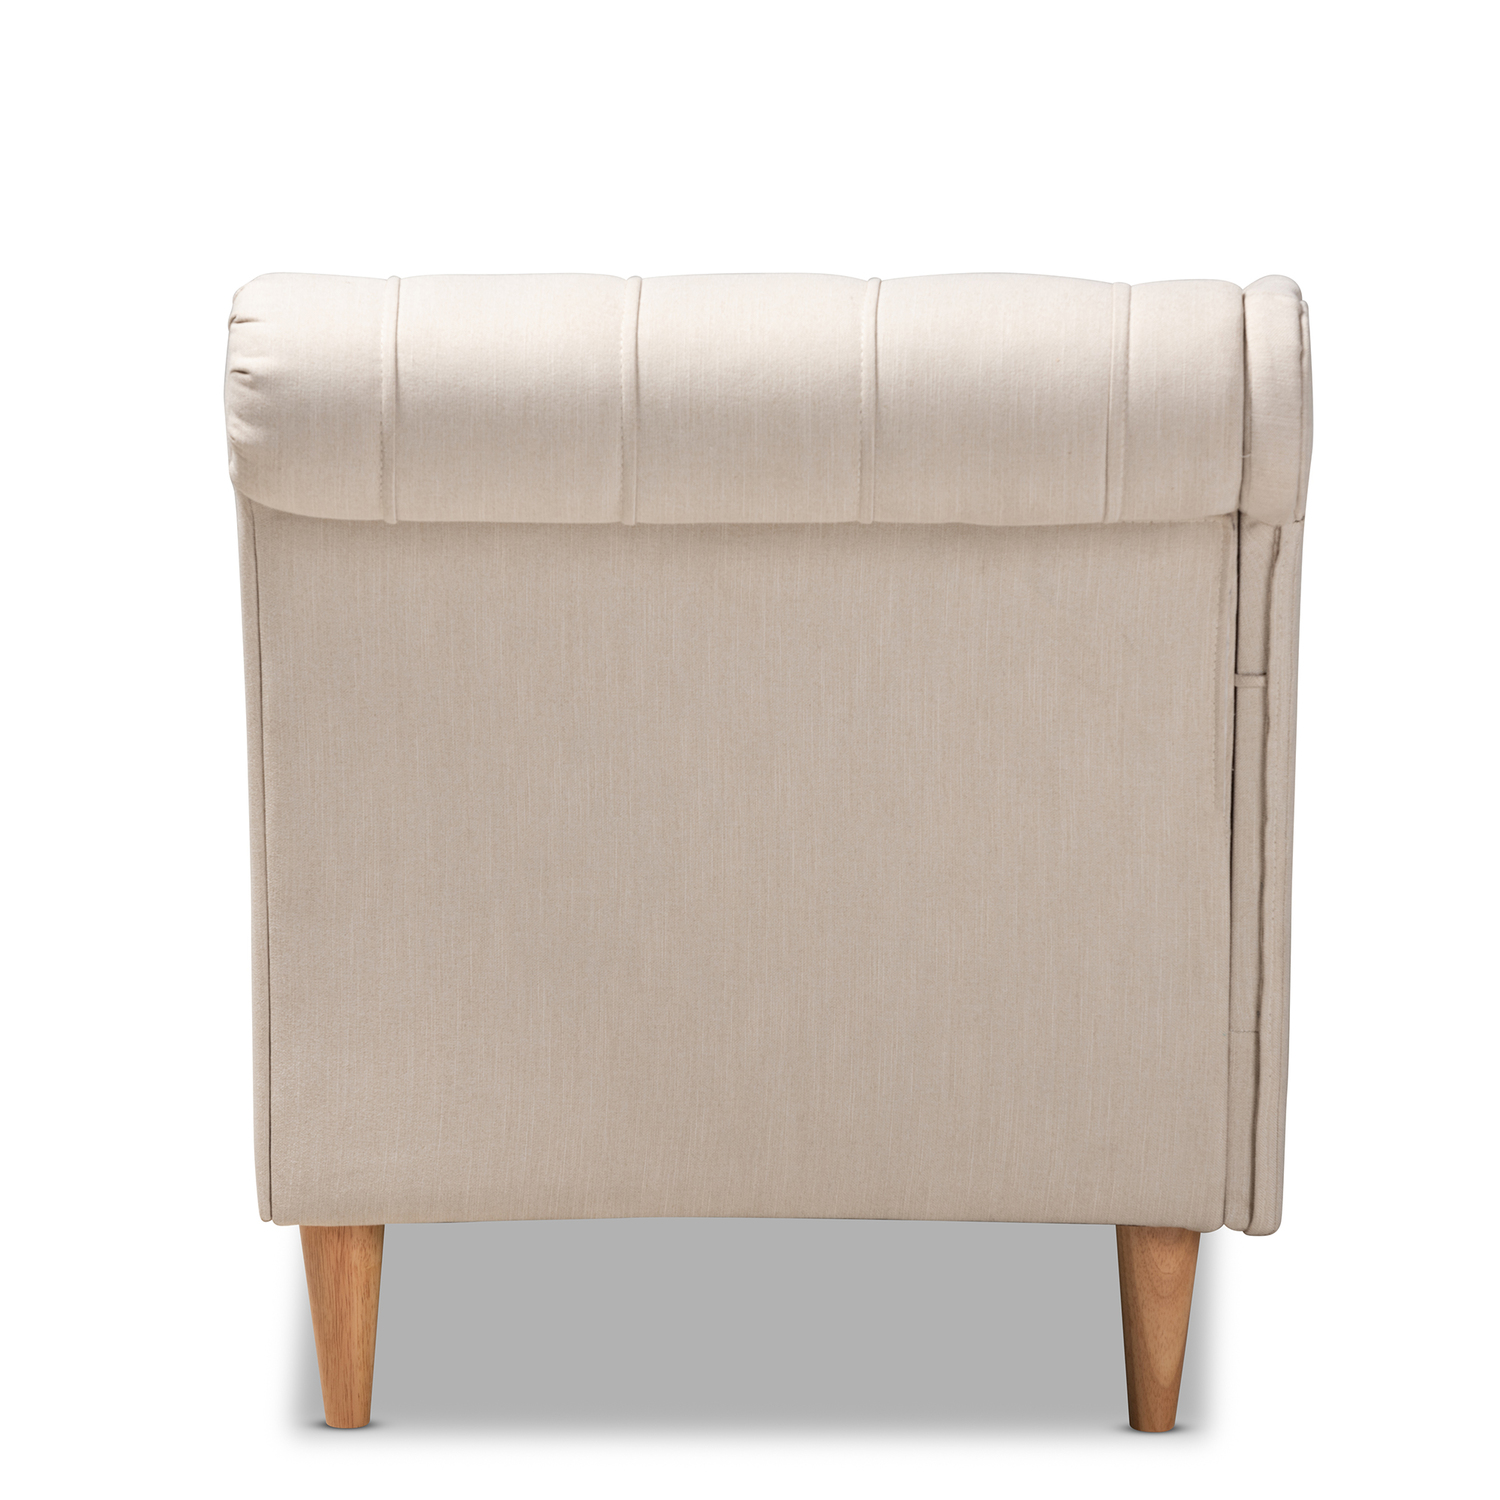 Baxton Studio Emeline Beige Upholstered Oak Finished Chaise Lounge - image 5 of 9